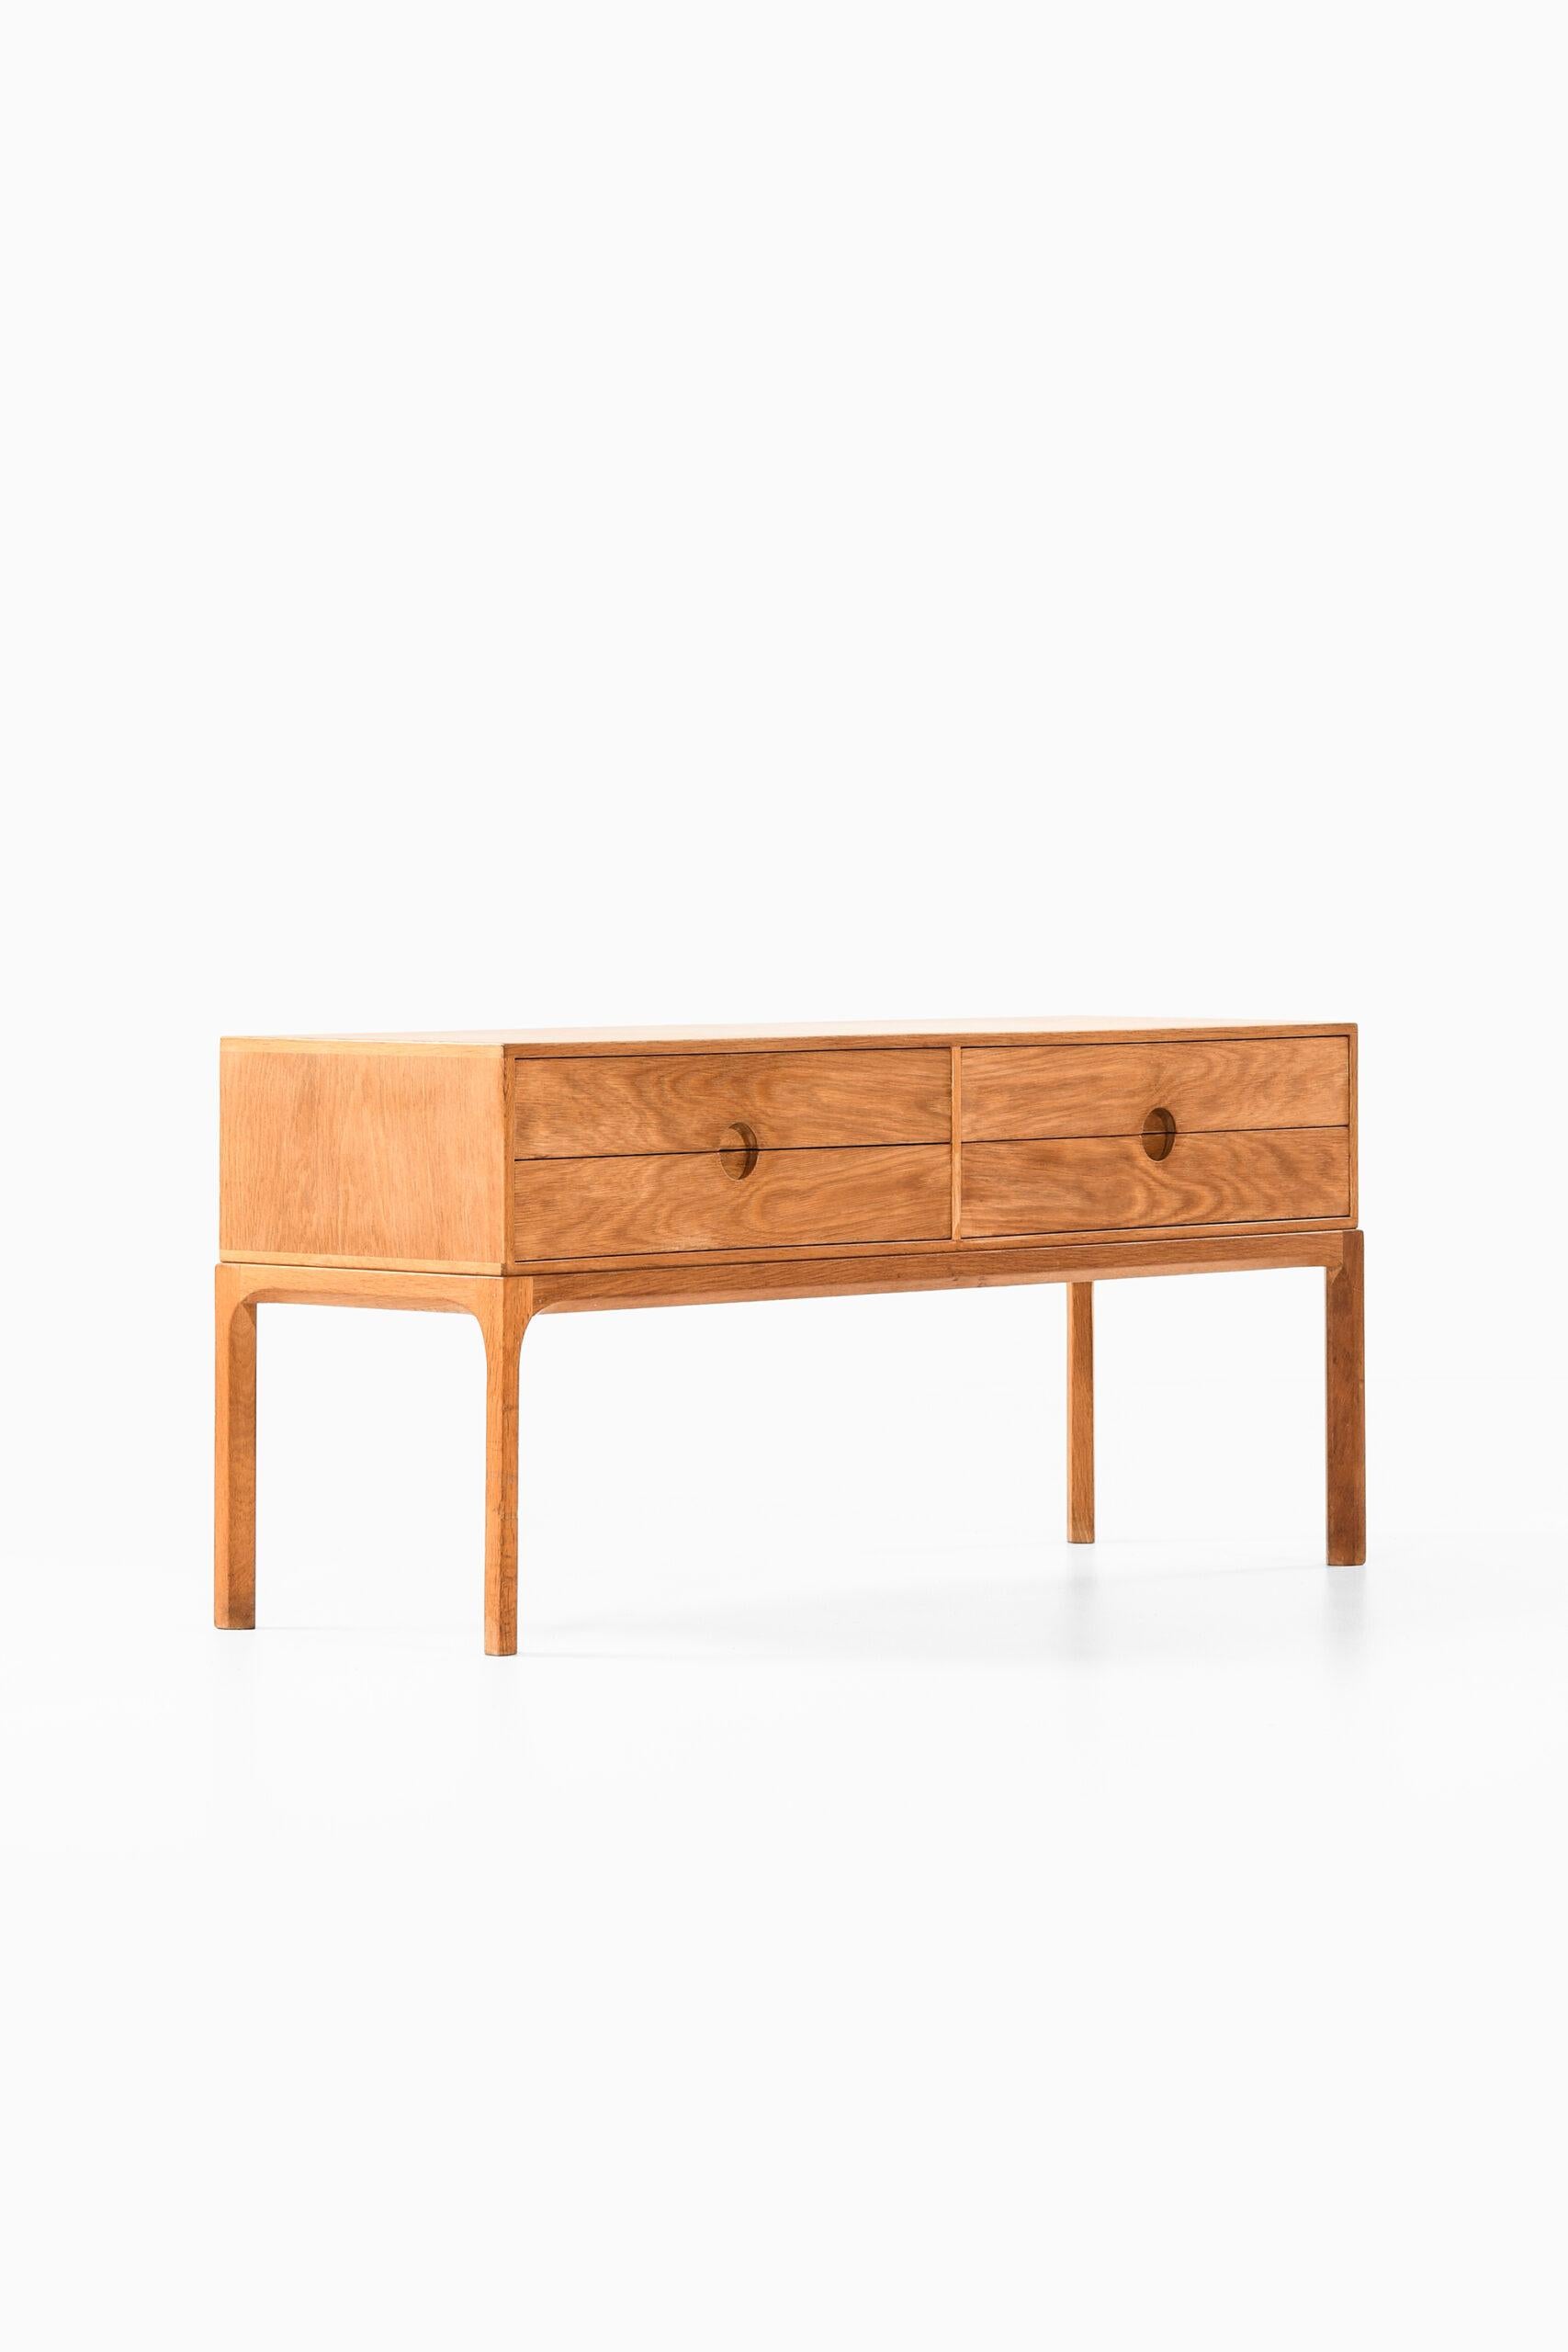 Kai Kristiansen Bureau / Side Table Model 394 by Aksel Kjersgaard in Denmark For Sale 1